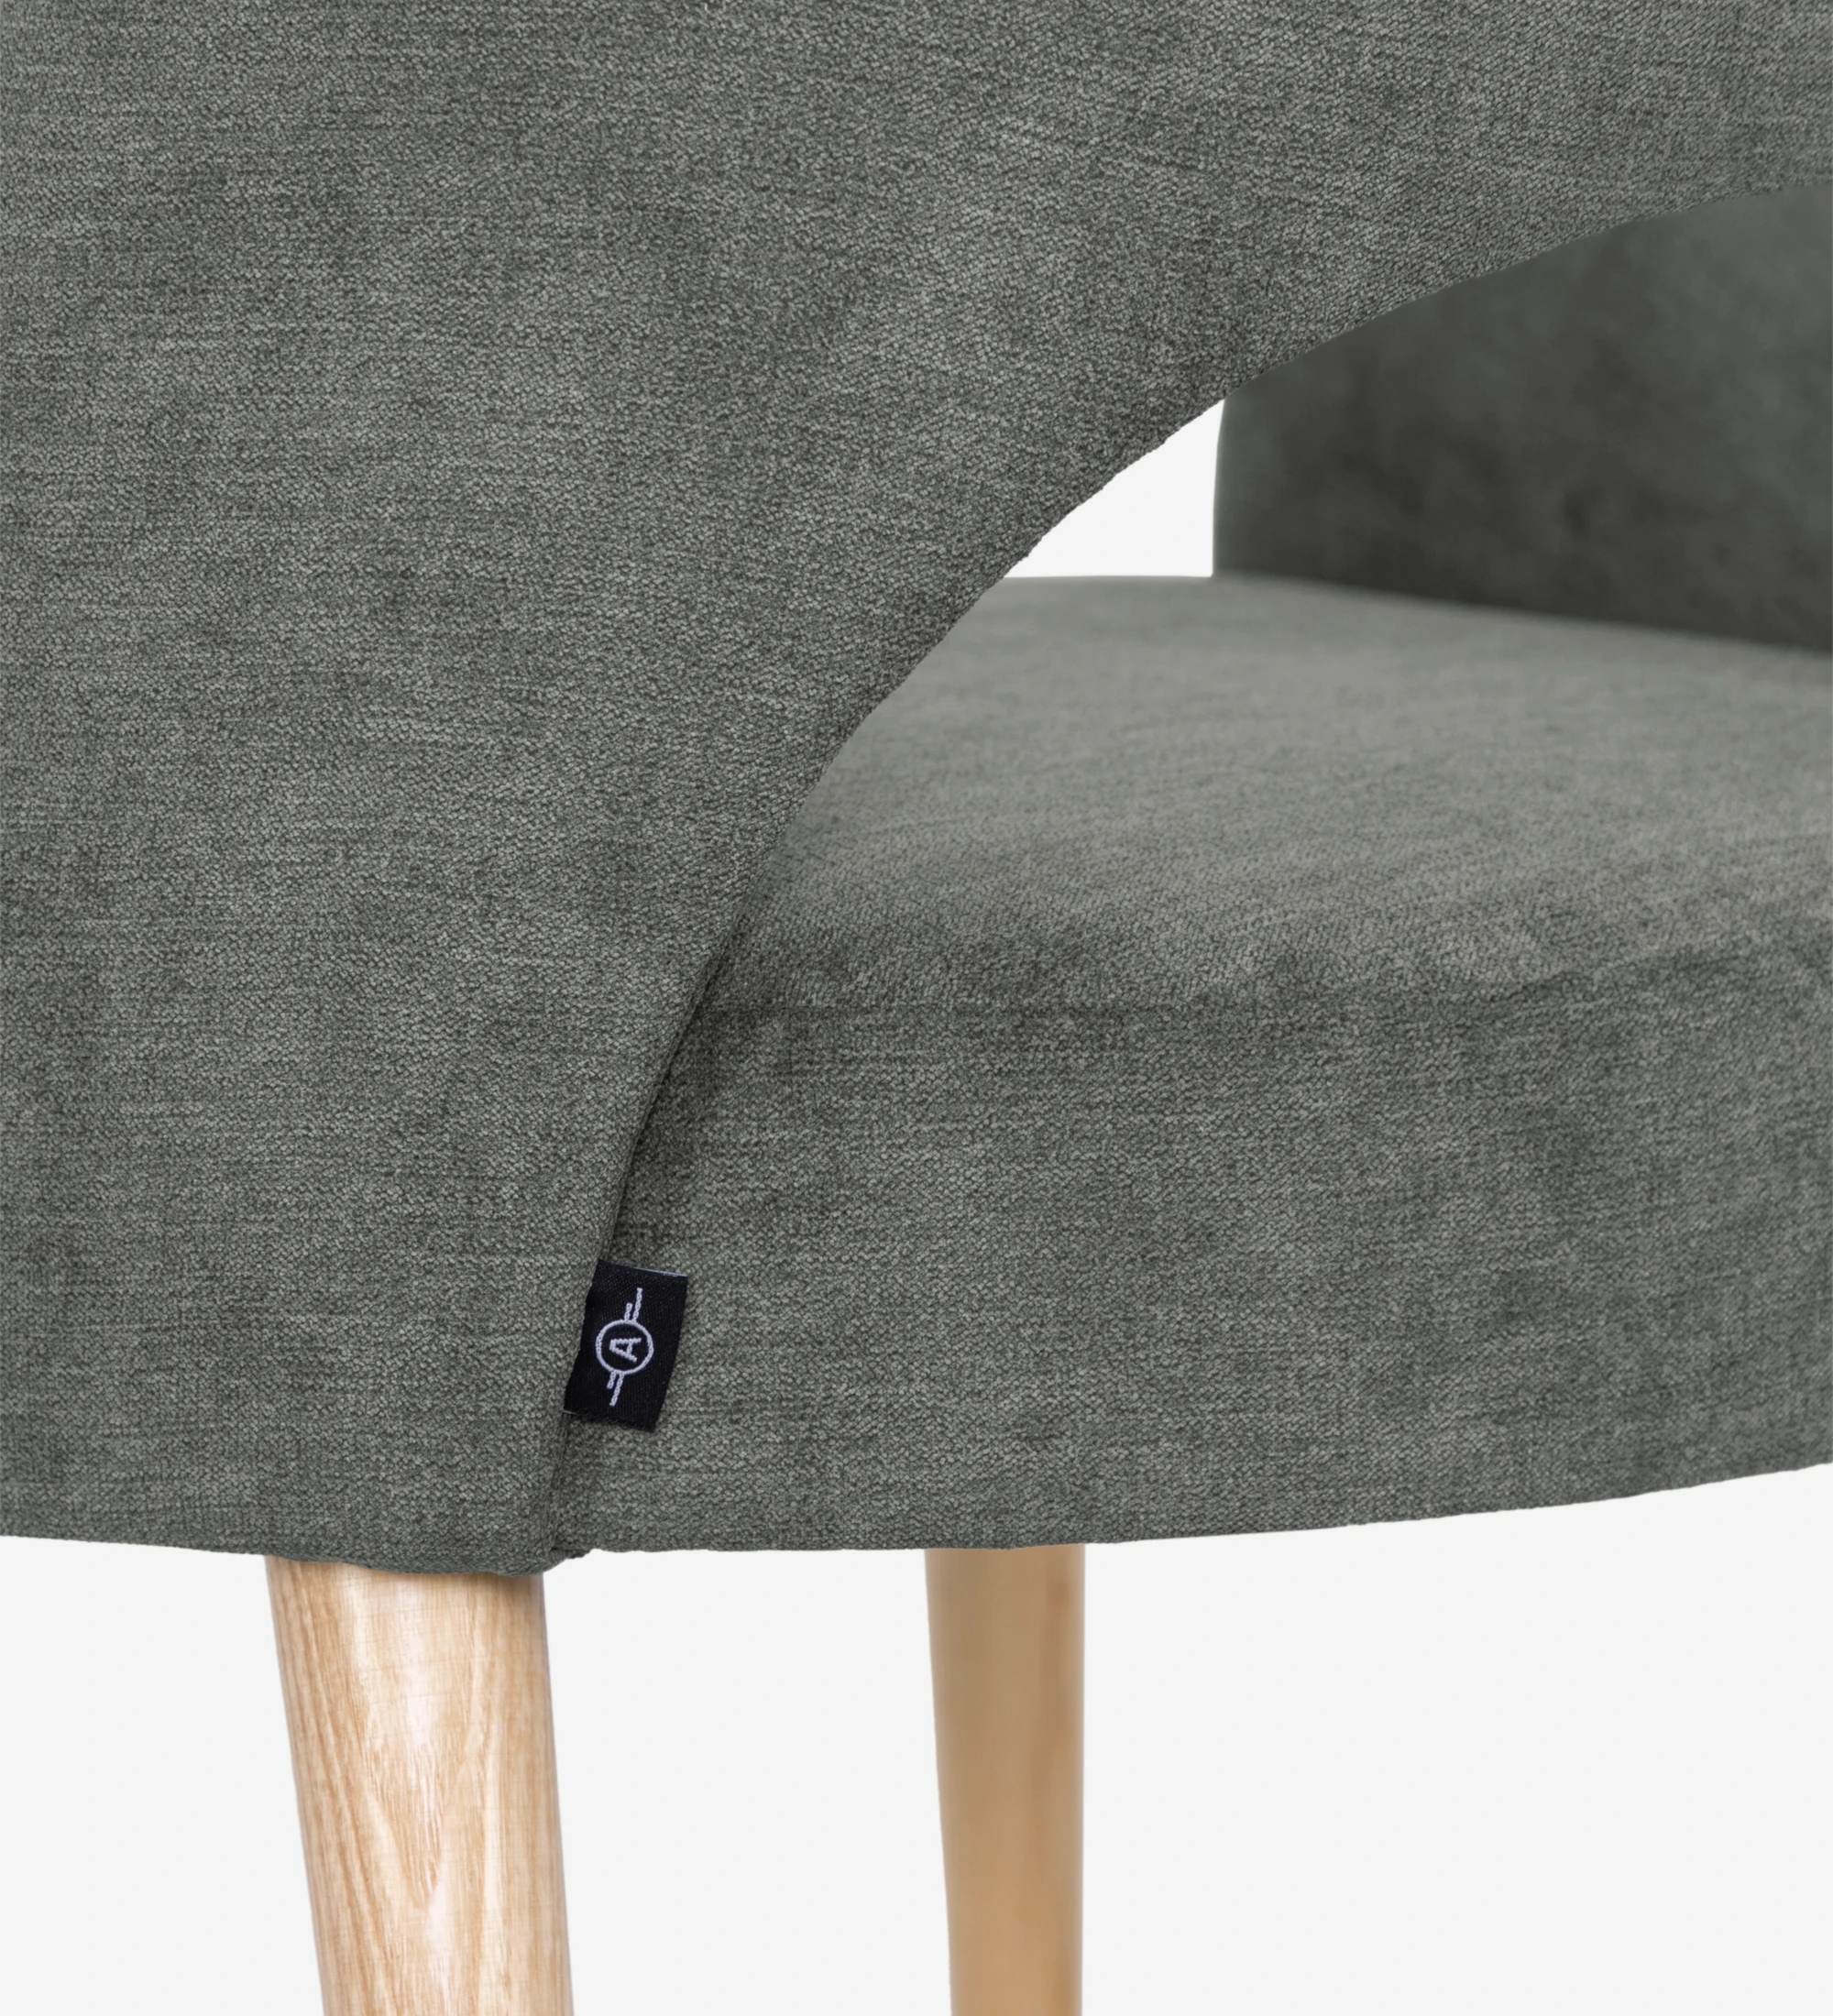 Chaise Paris avec accoudoirs, recouverte de tissu vert, pieds en bois naturel.